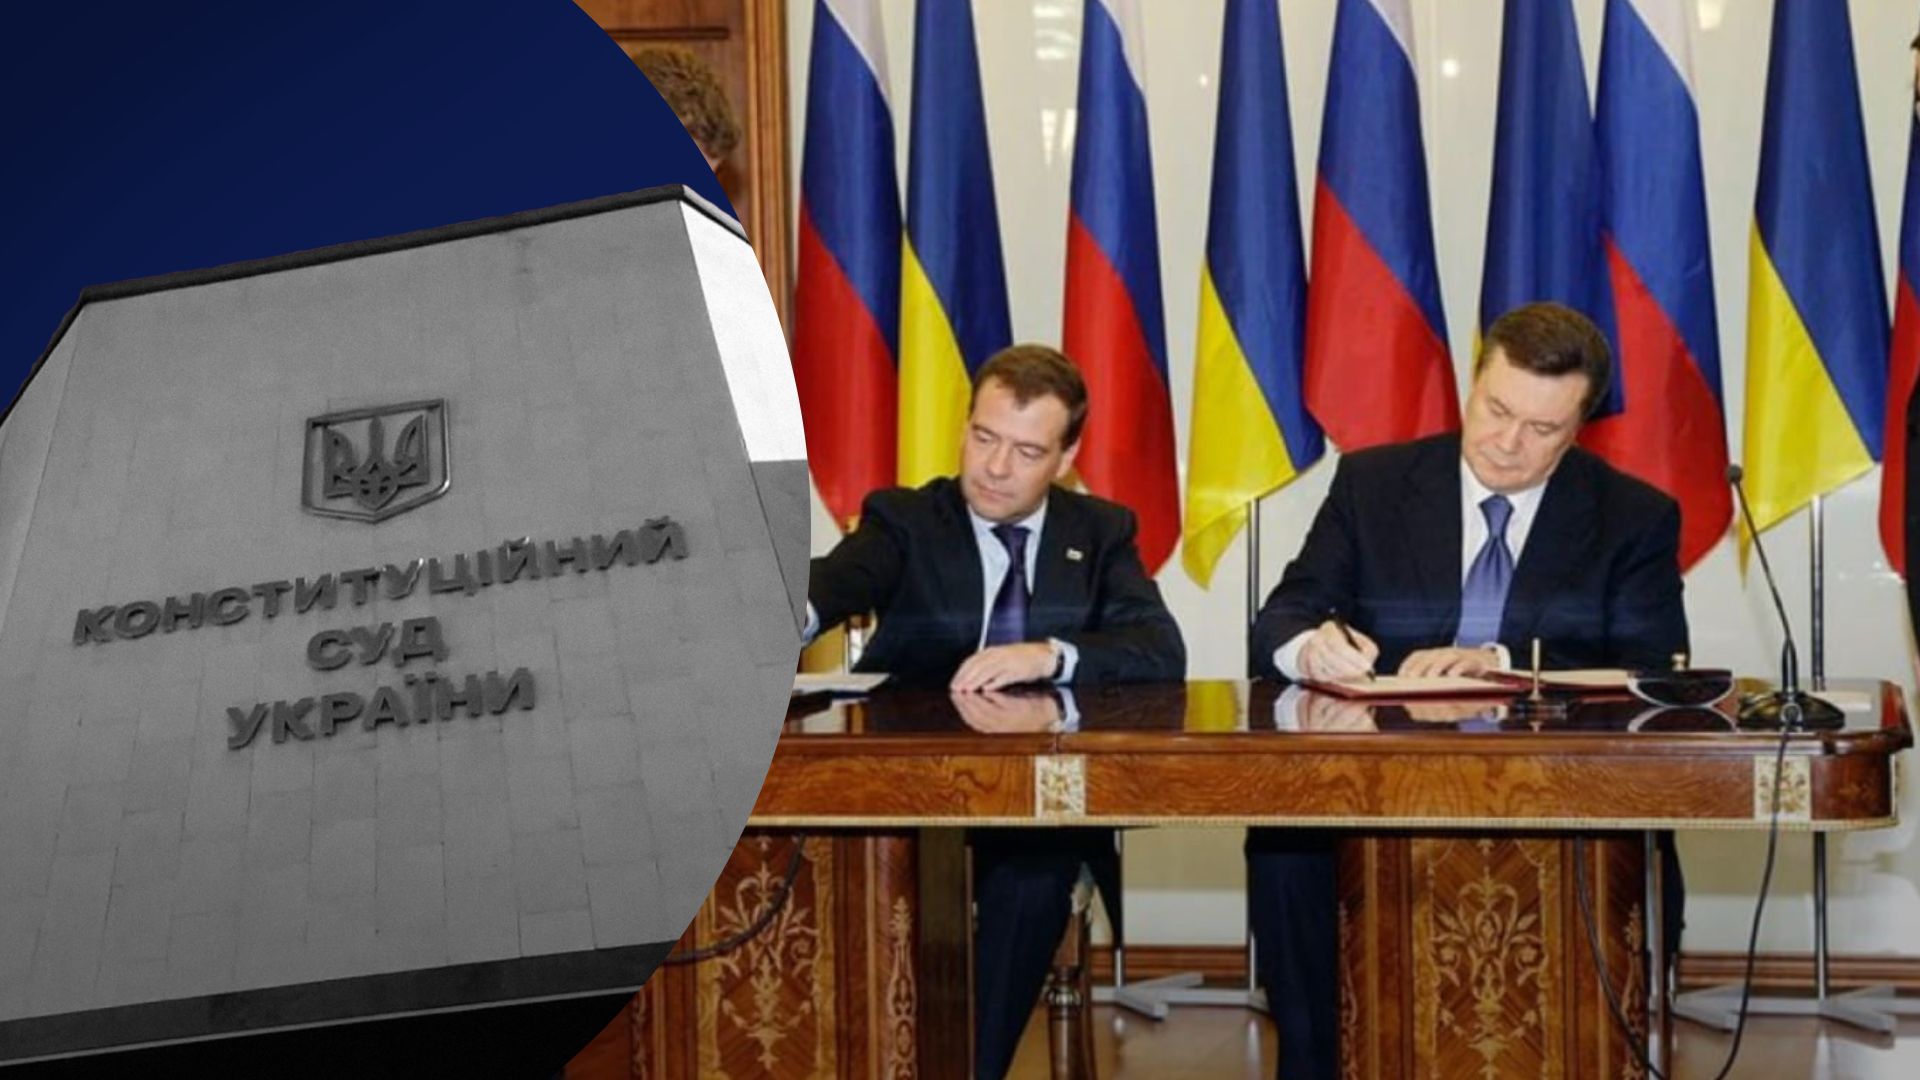 Нардепи вважають Харківські угоди неконституційними